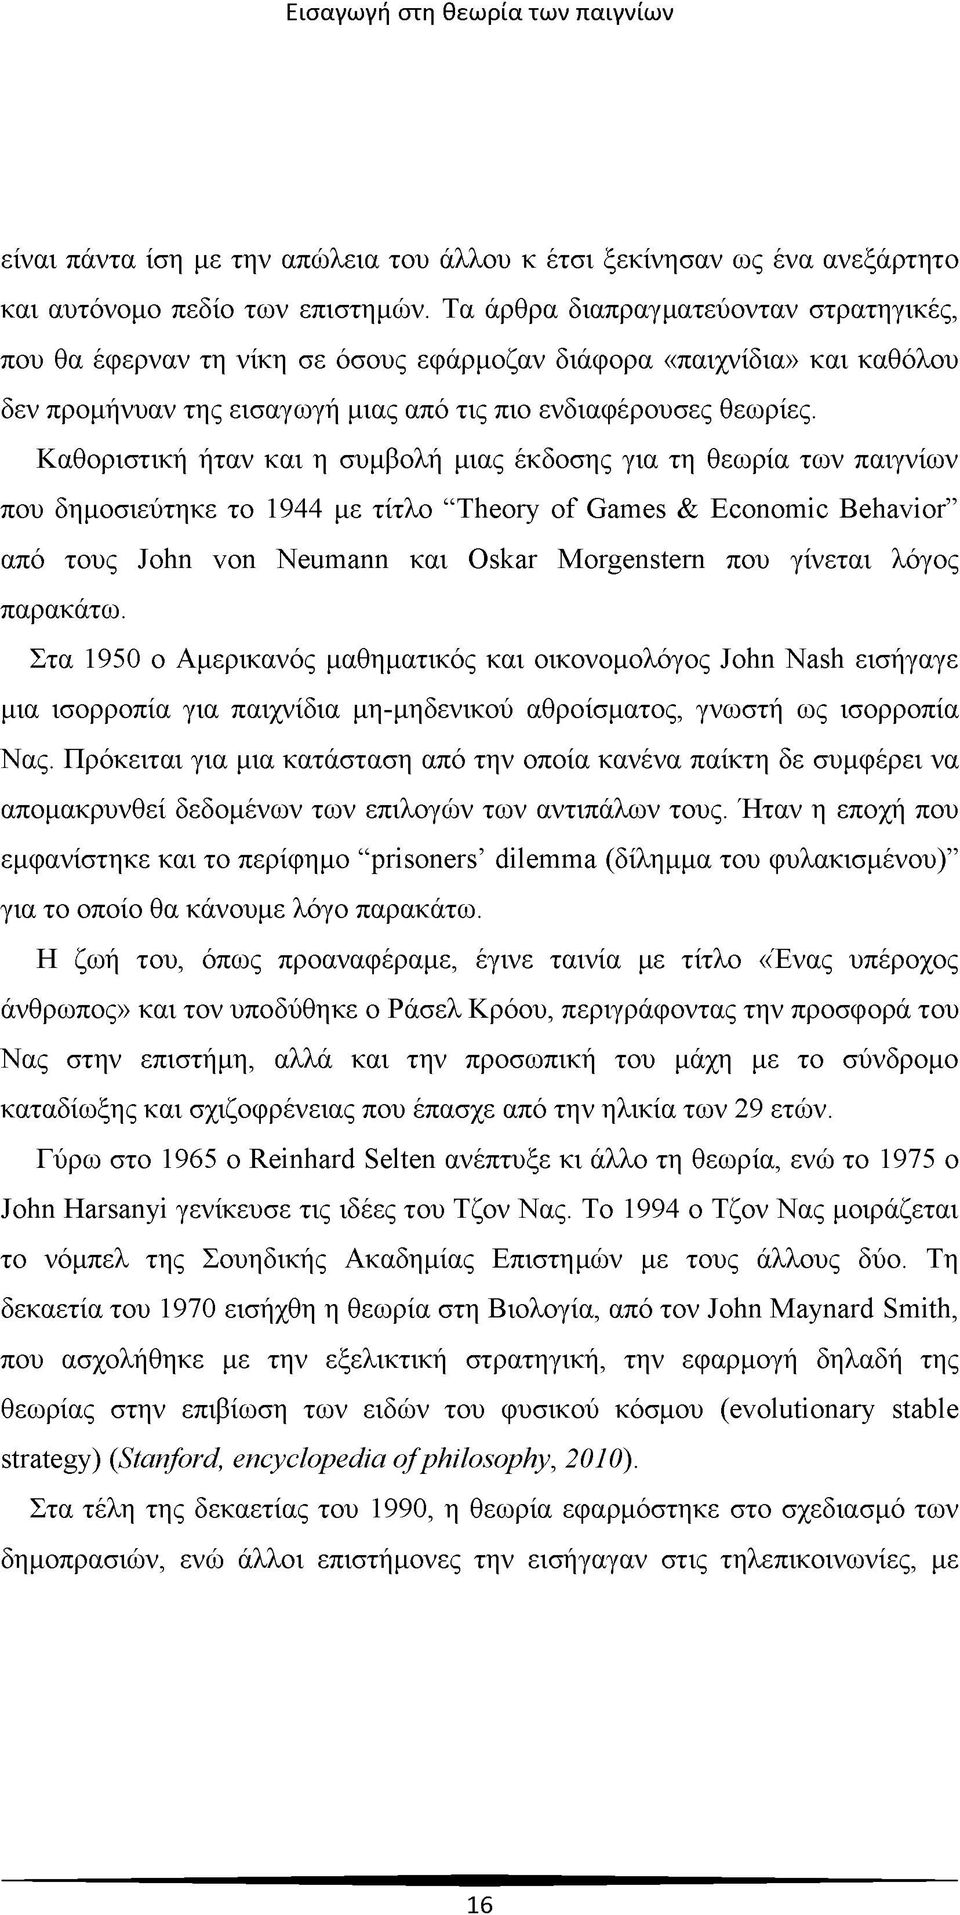 Καθοριστική ήταν και η συμβολή μιας έκδοσης για τη θεωρία των παιγνίων που δημοσιεύτηκε το 1944 με τίτλο Theory of Games & Economic Behavior από τους John von Neumann και Oskar Morgenstern που